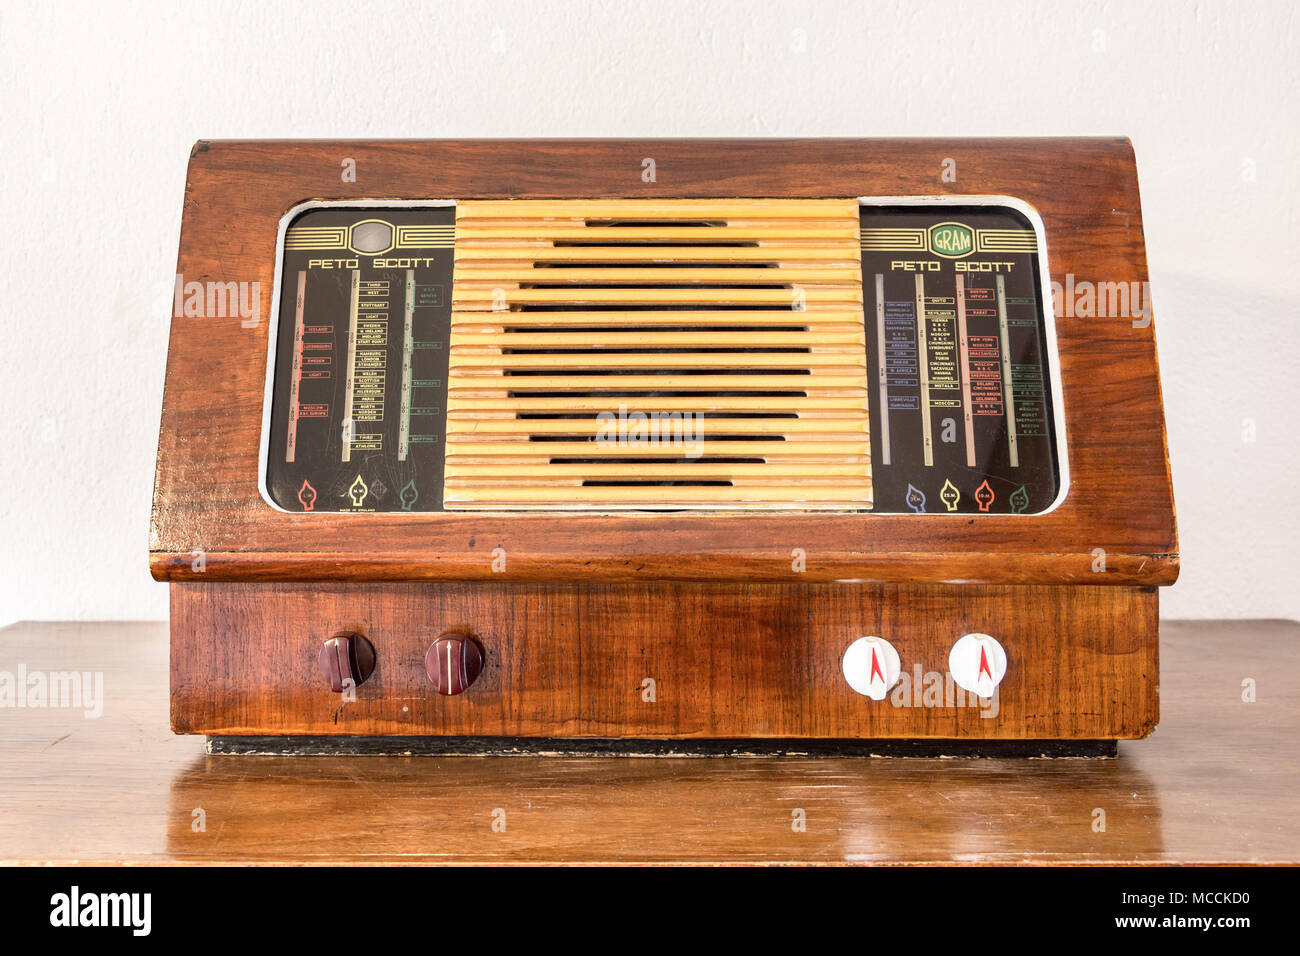 Larissa, Griechenland - April 8th, 2018: Holz- Vintage Peto - Scott Radio Feature mit Kurzwelle und 4 Knöpfen. Stockfoto